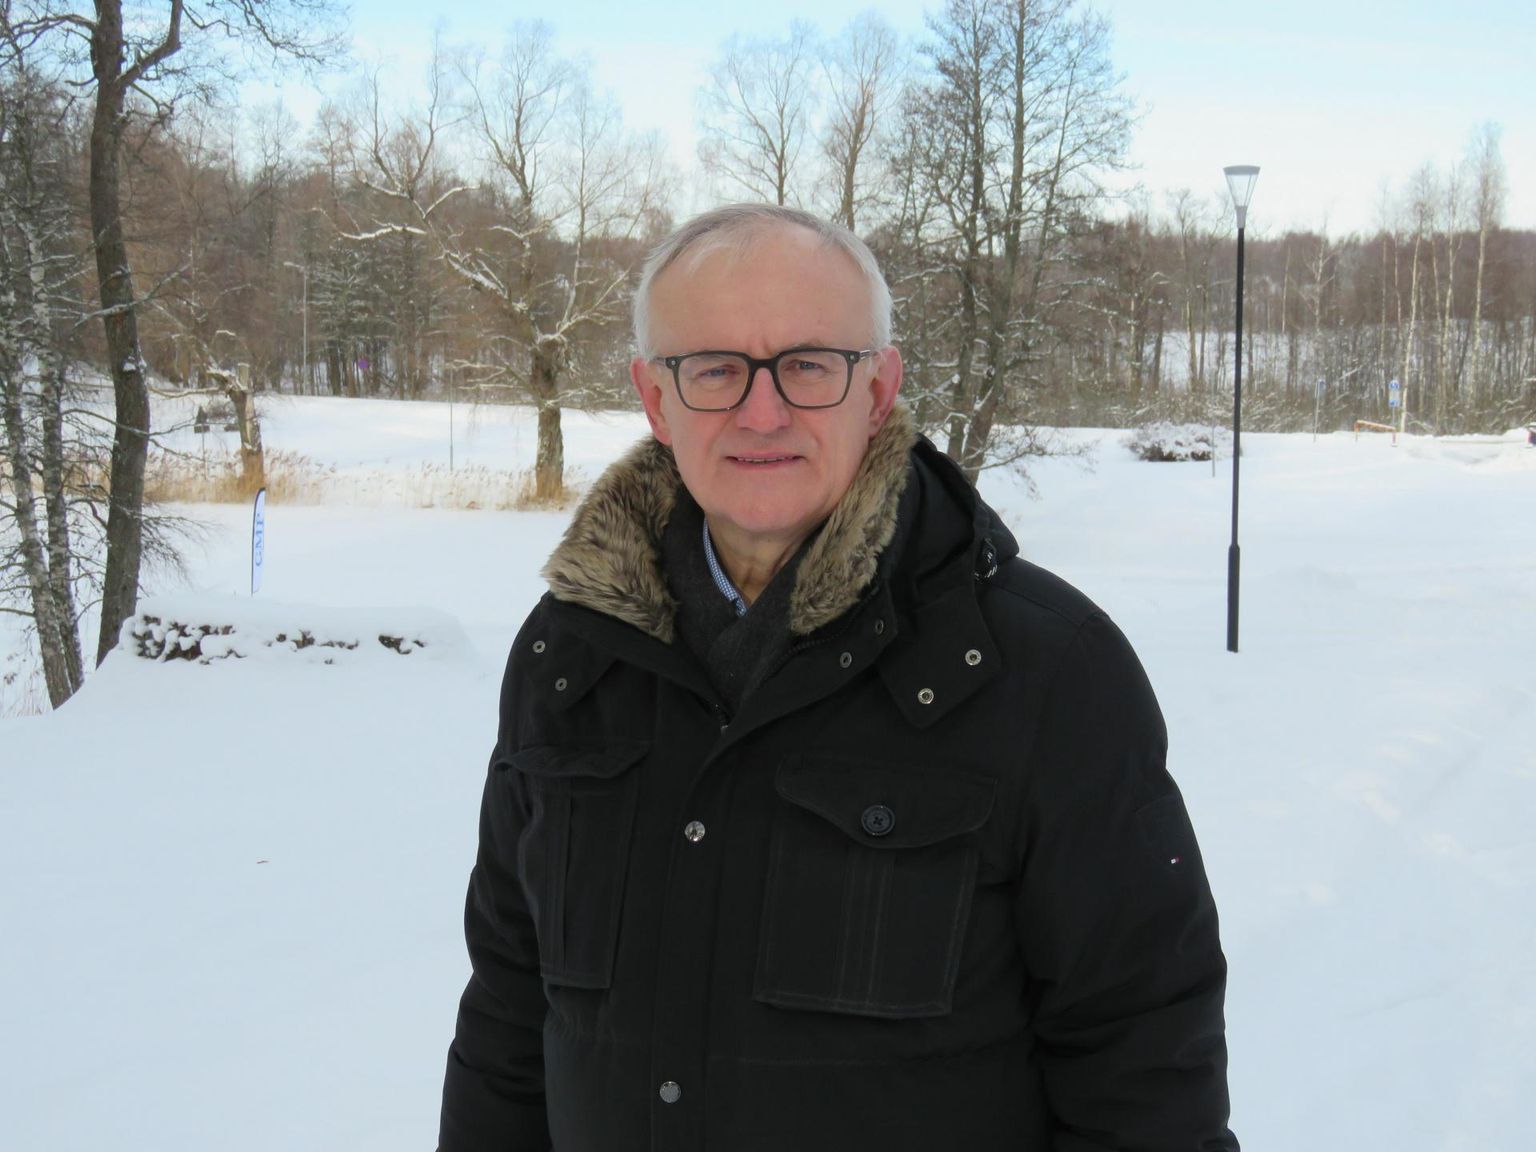 Läbi ja lõhki lõunaeestlane, Eesti välisluure rajaja ja pikka aega diplomaadina töötanud Ants Frosch elab nüüd juba mitu aastat Otepääl, kus tal meeldib tihti Pühajärve ääres jalutamas käia.